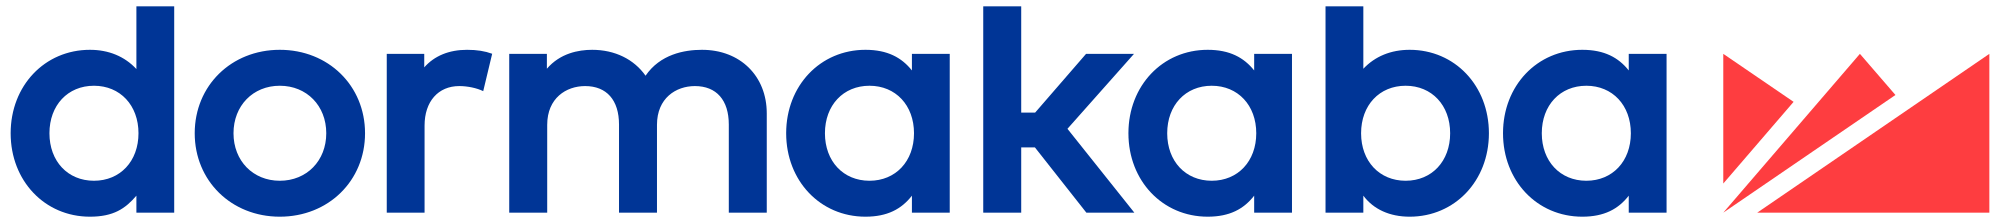 Hersteller Dormakaba Logo